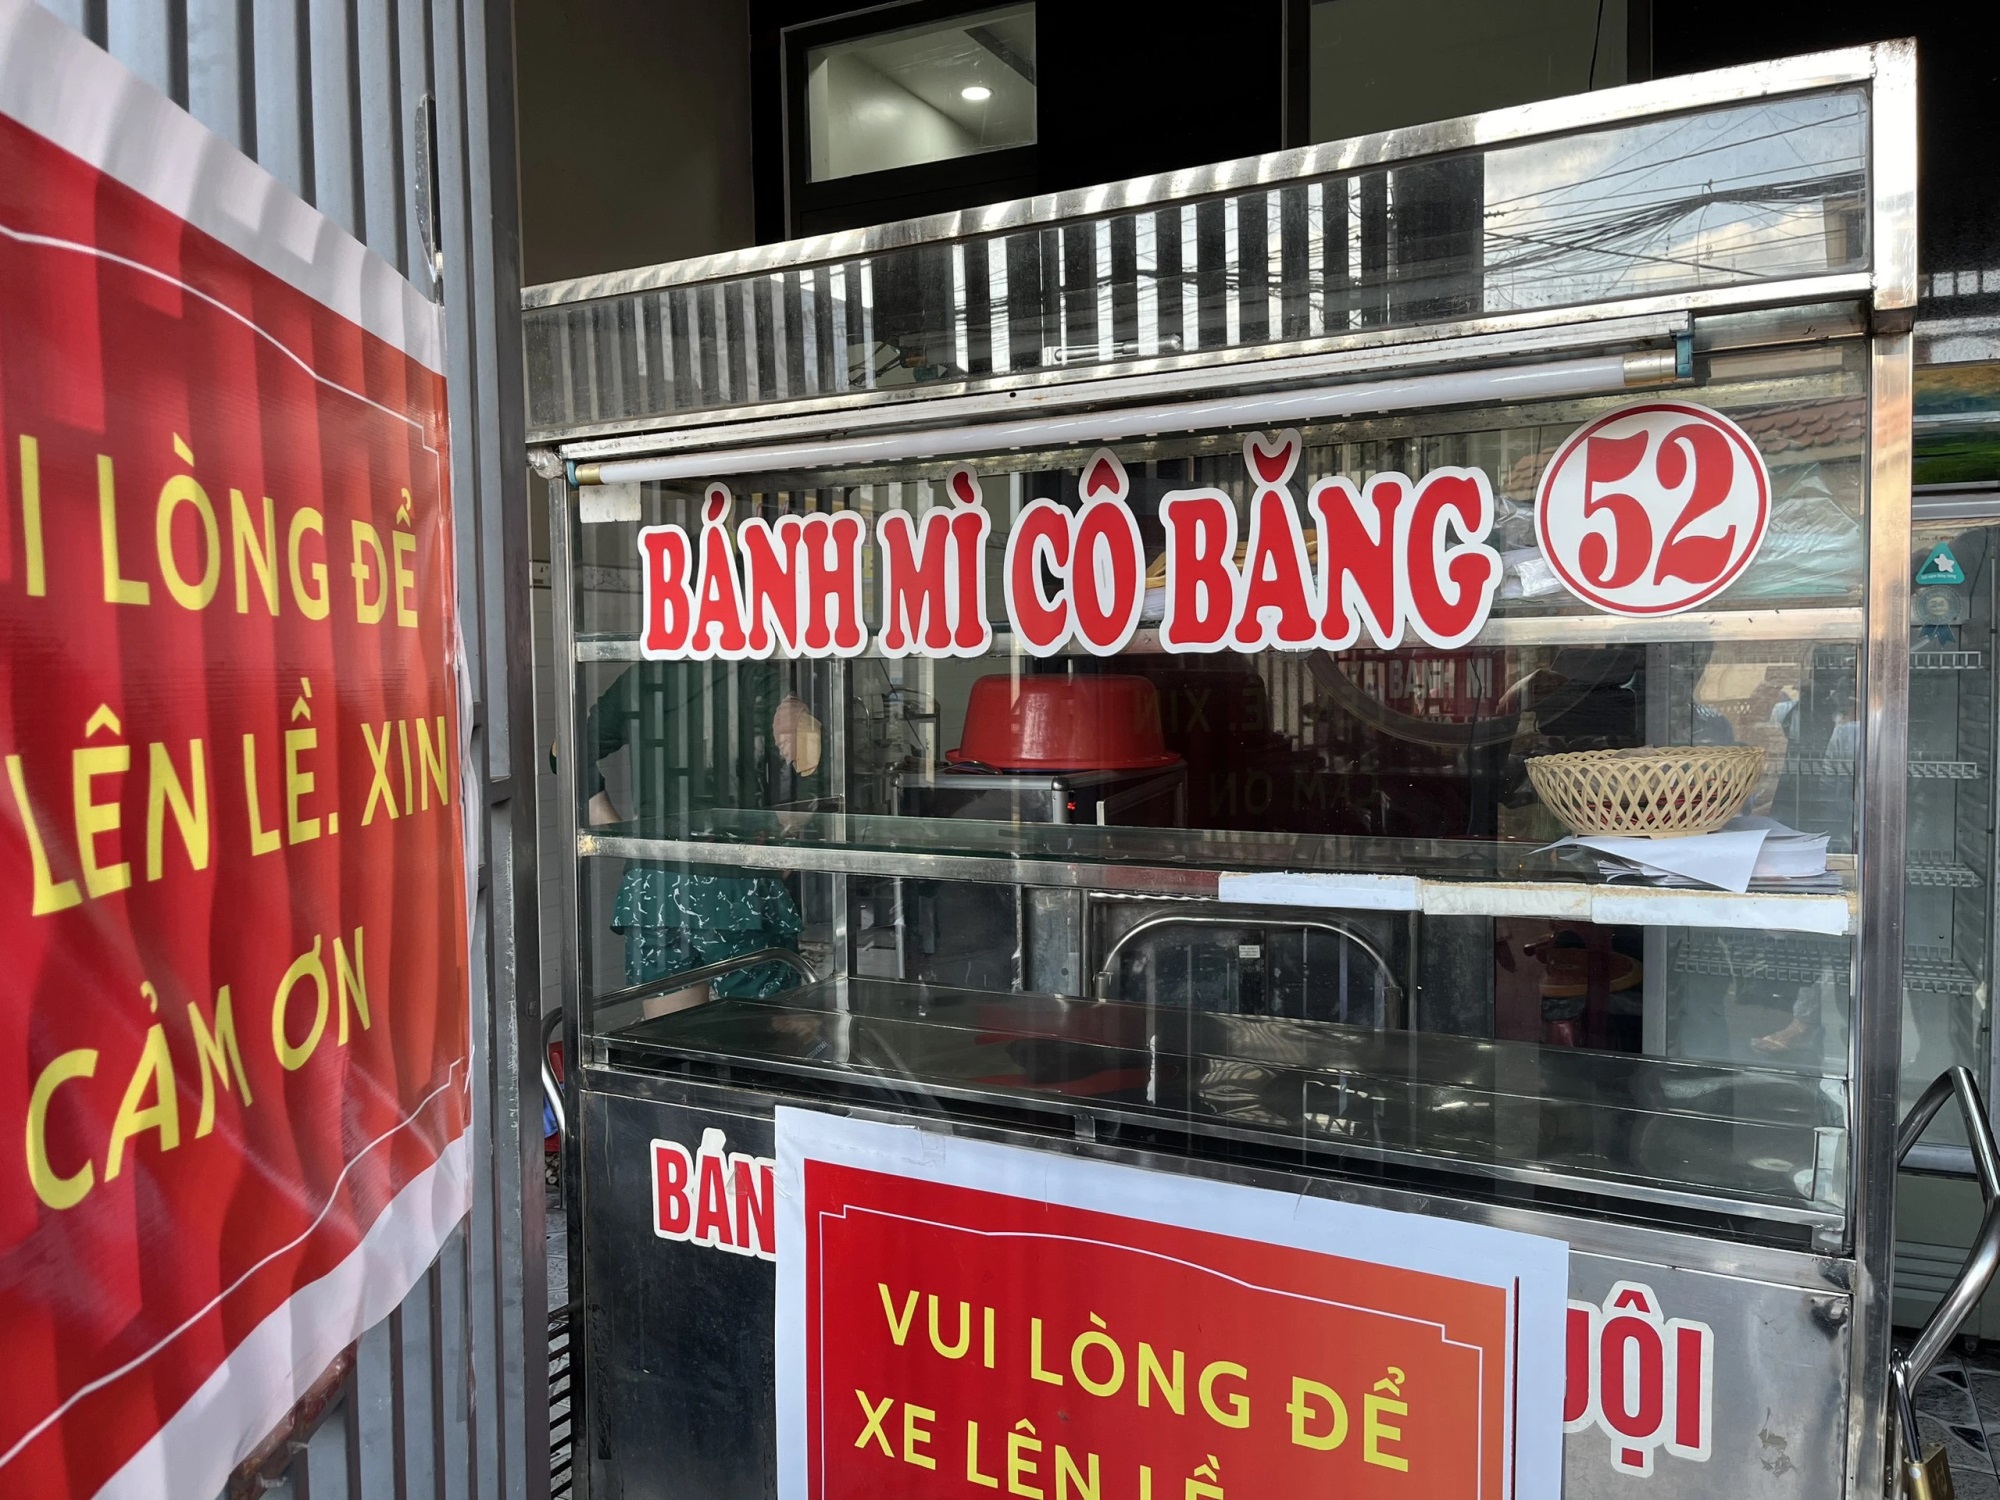 Tiệm bánh mì gây ngộ độc hơn 500 người ở Đồng Nai: Không có hóa đơn mua nguyên liệu, chế biến theo công thức riêng - Ảnh 2